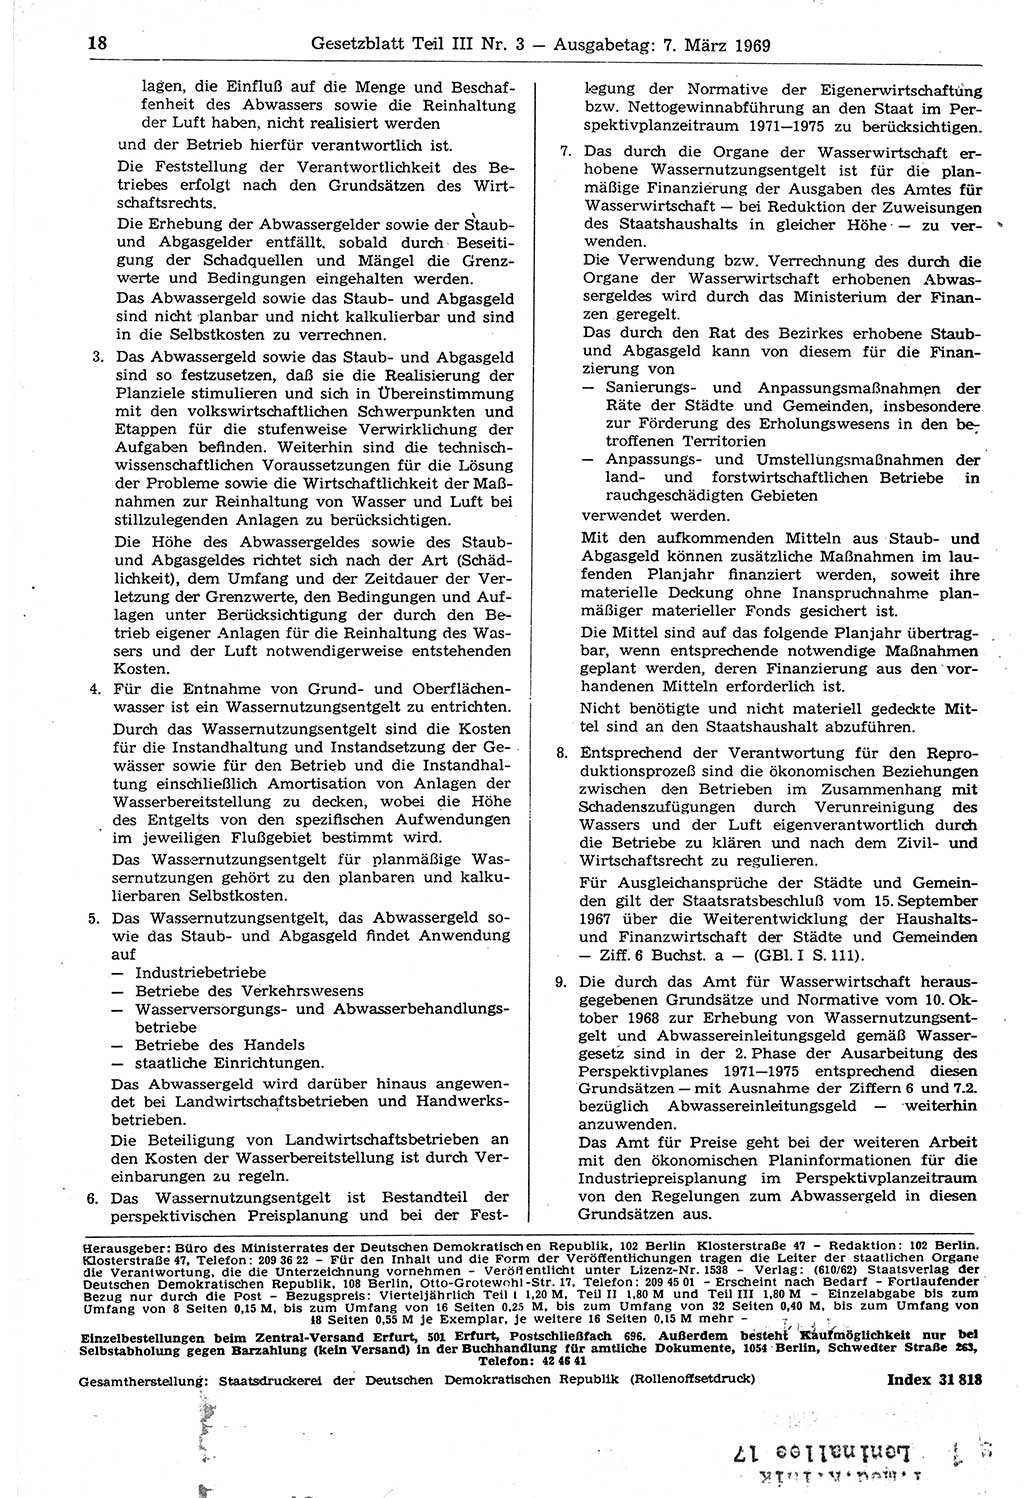 Gesetzblatt (GBl.) der Deutschen Demokratischen Republik (DDR) Teil ⅠⅠⅠ 1969, Seite 18 (GBl. DDR ⅠⅠⅠ 1969, S. 18)